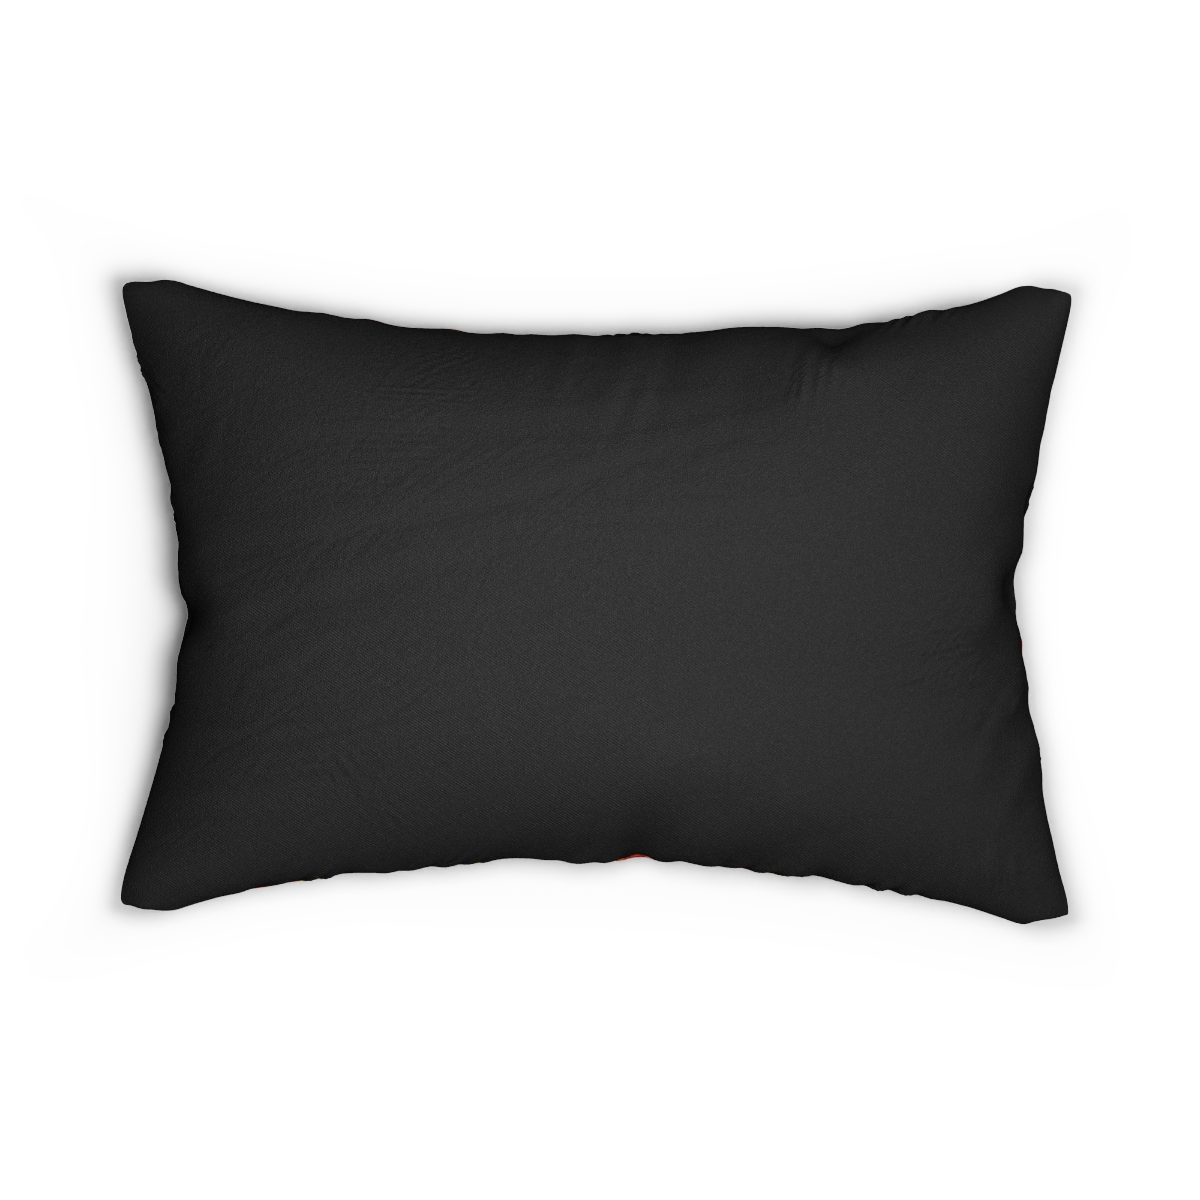 Spun Polyester Lumbar Pillow product thumbnail image